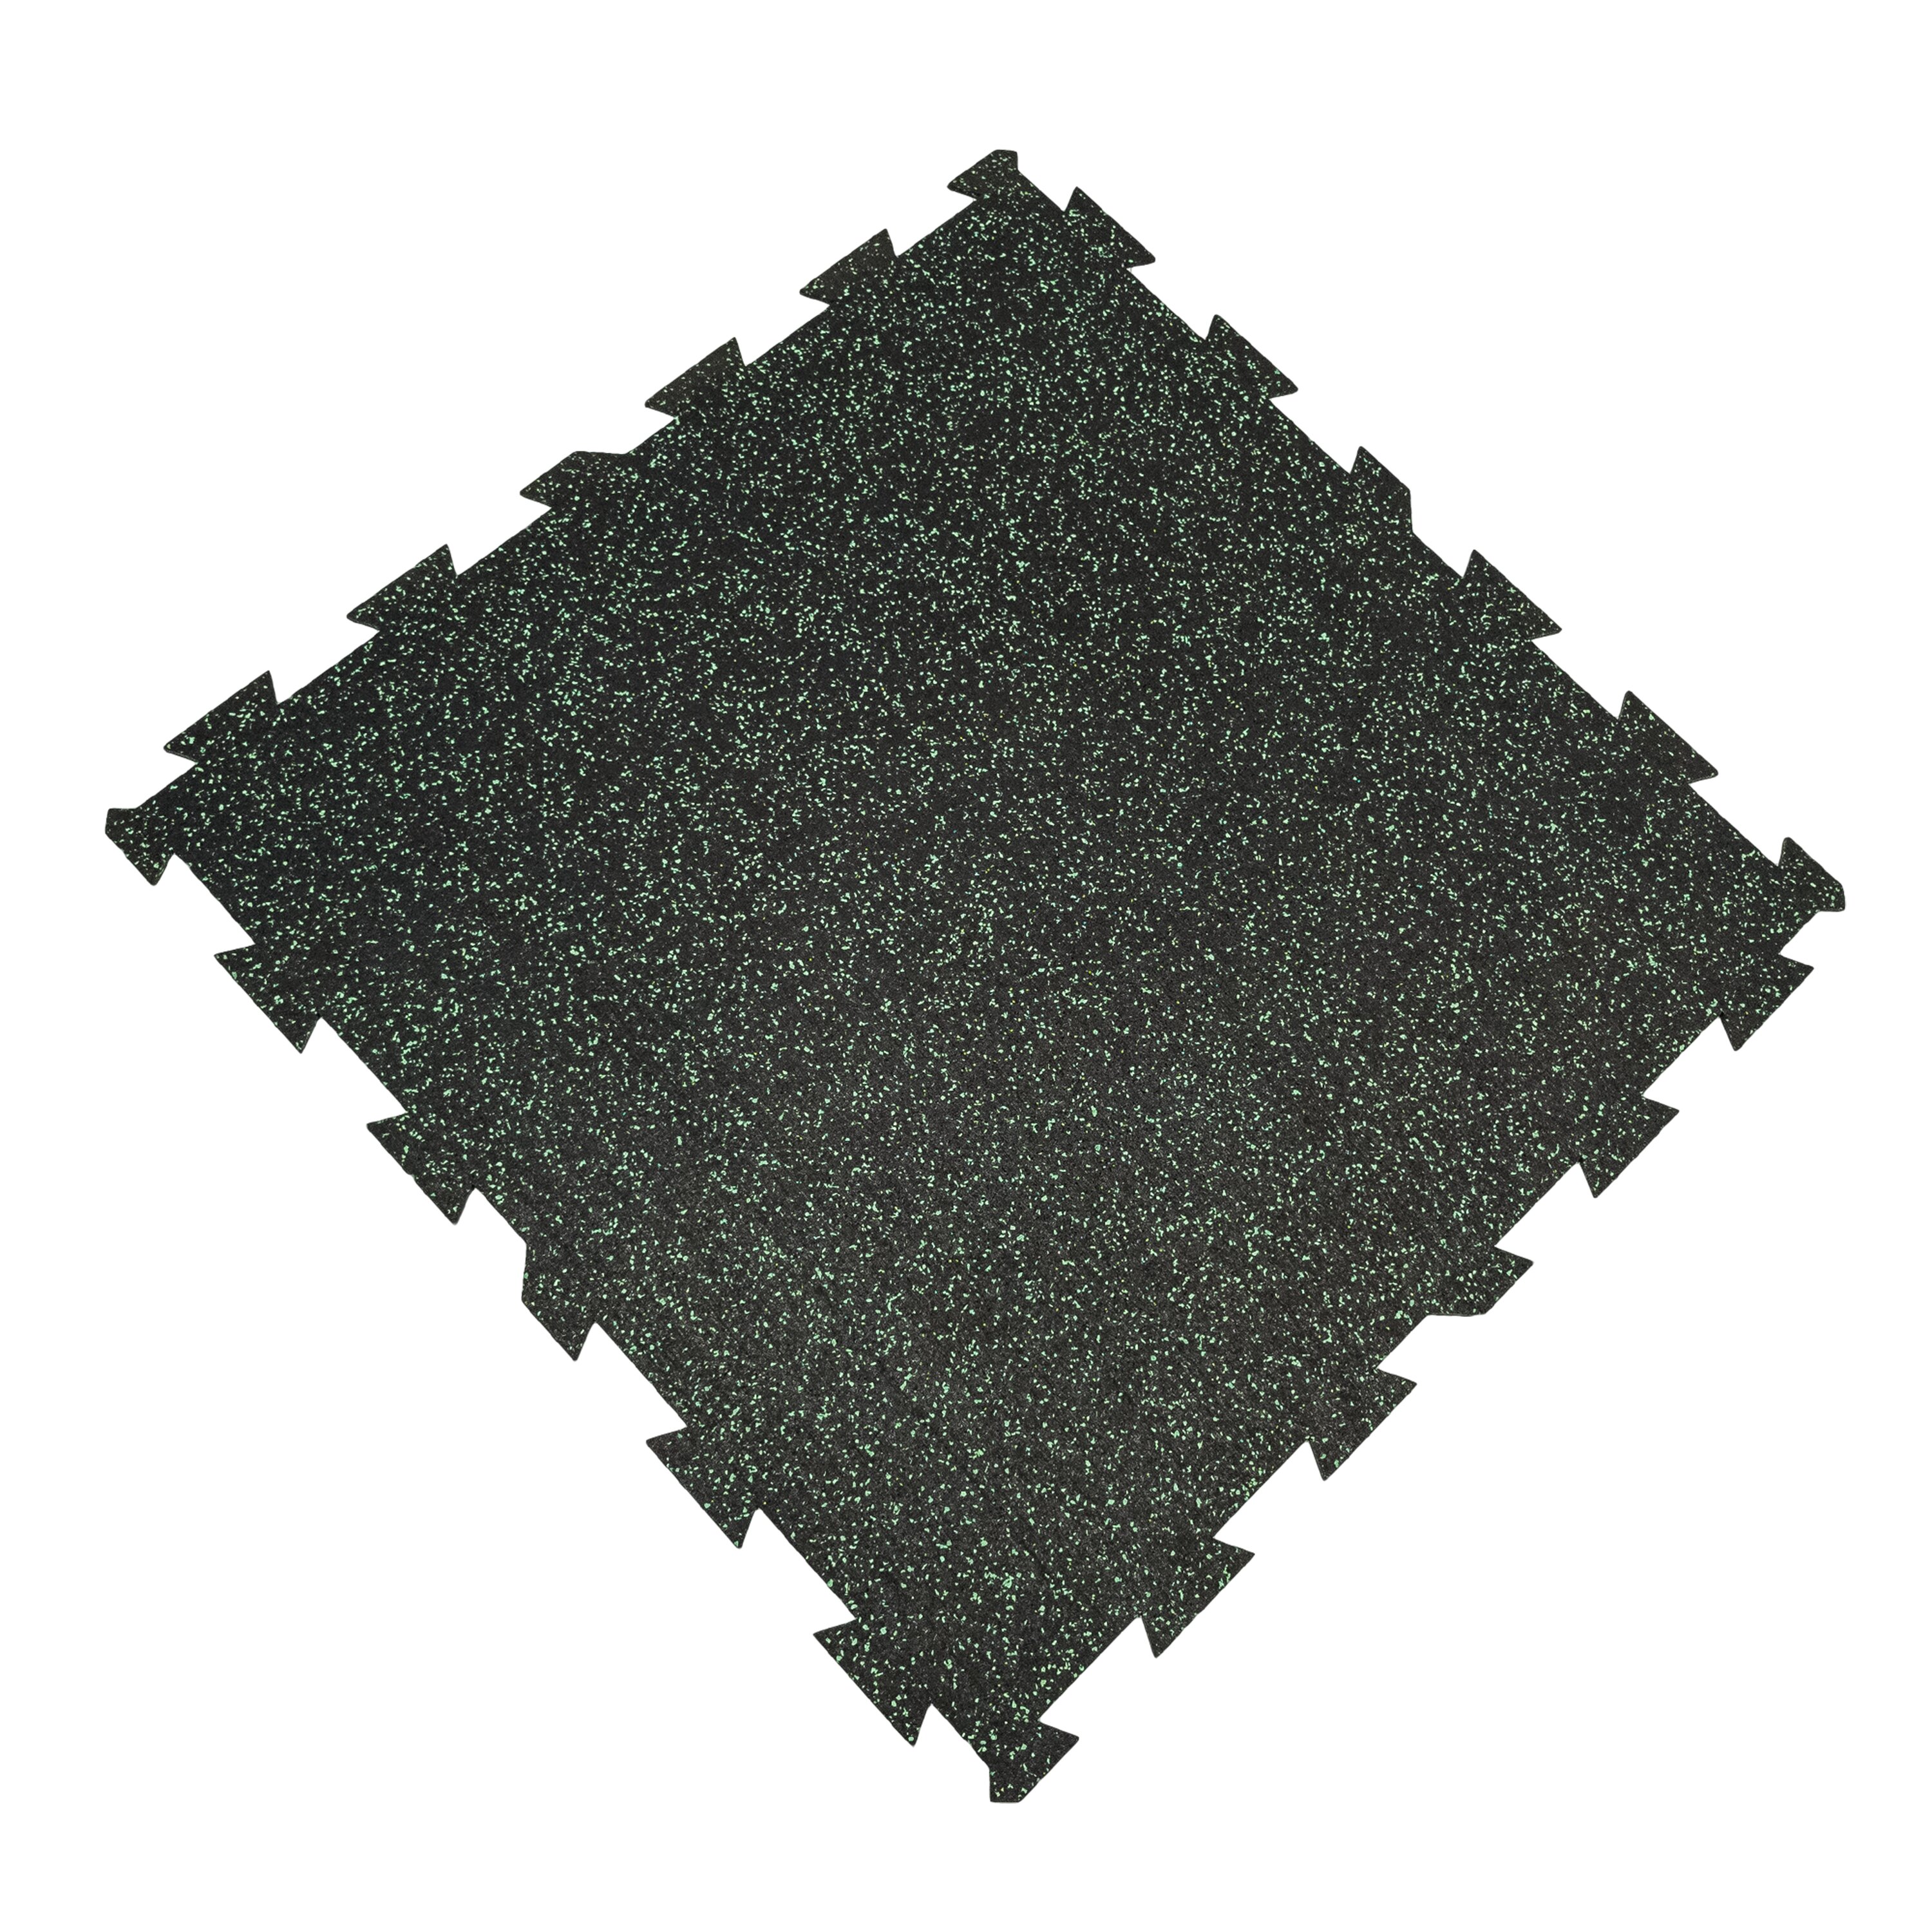 Čierno-zelená podlahová guma (puzzle - stred) FLOMA FitFlo SF1050 - dĺžka 100 cm, šírka 100 cm, výška 0,8 cm